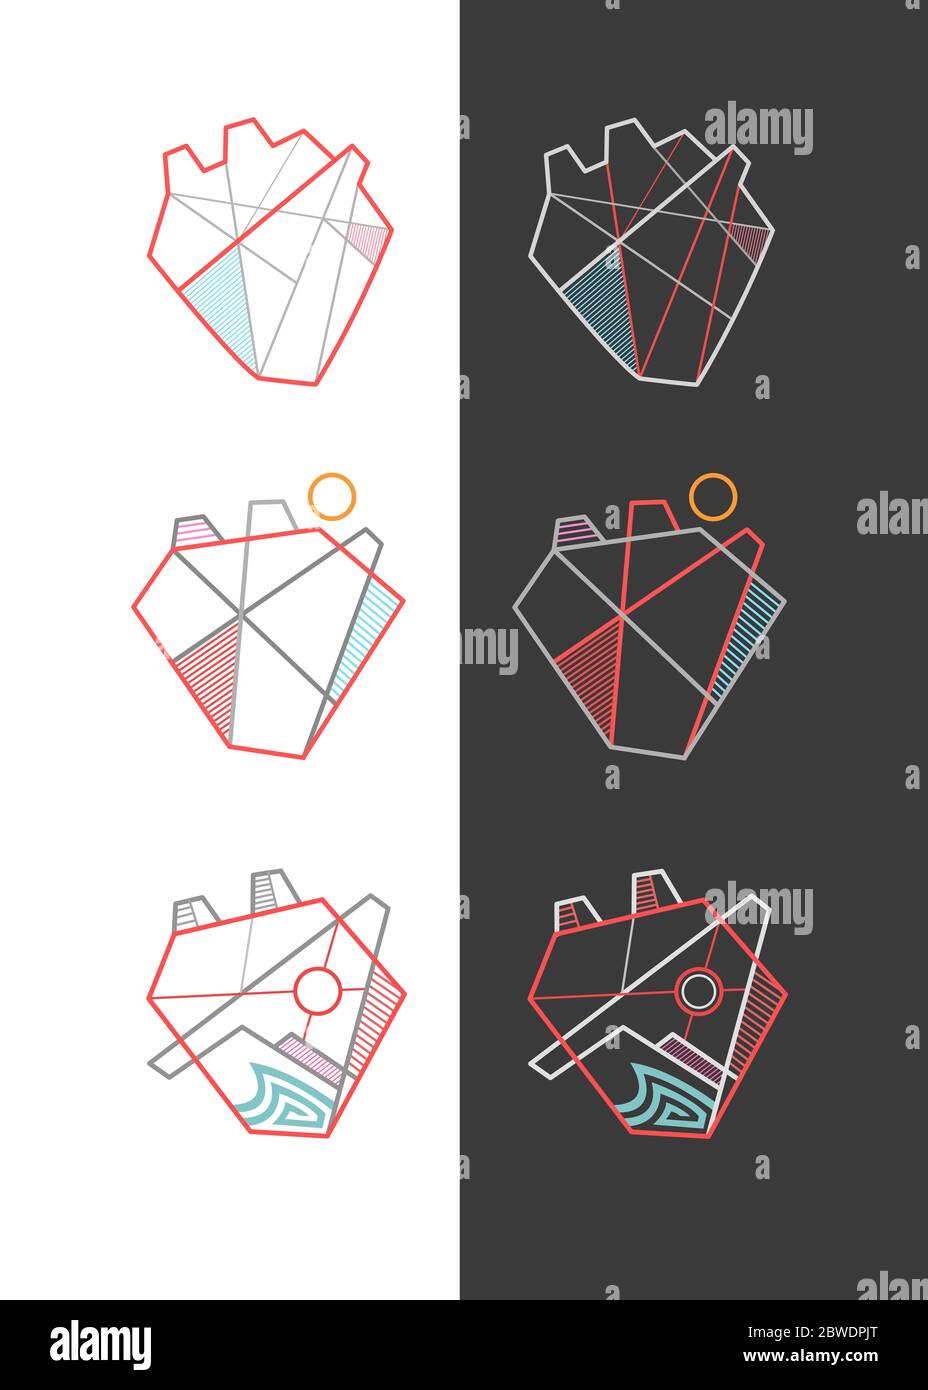 Illustrazioni vettoriali digitali di alcuni simboli geometrici minimi del cuore Foto Stock